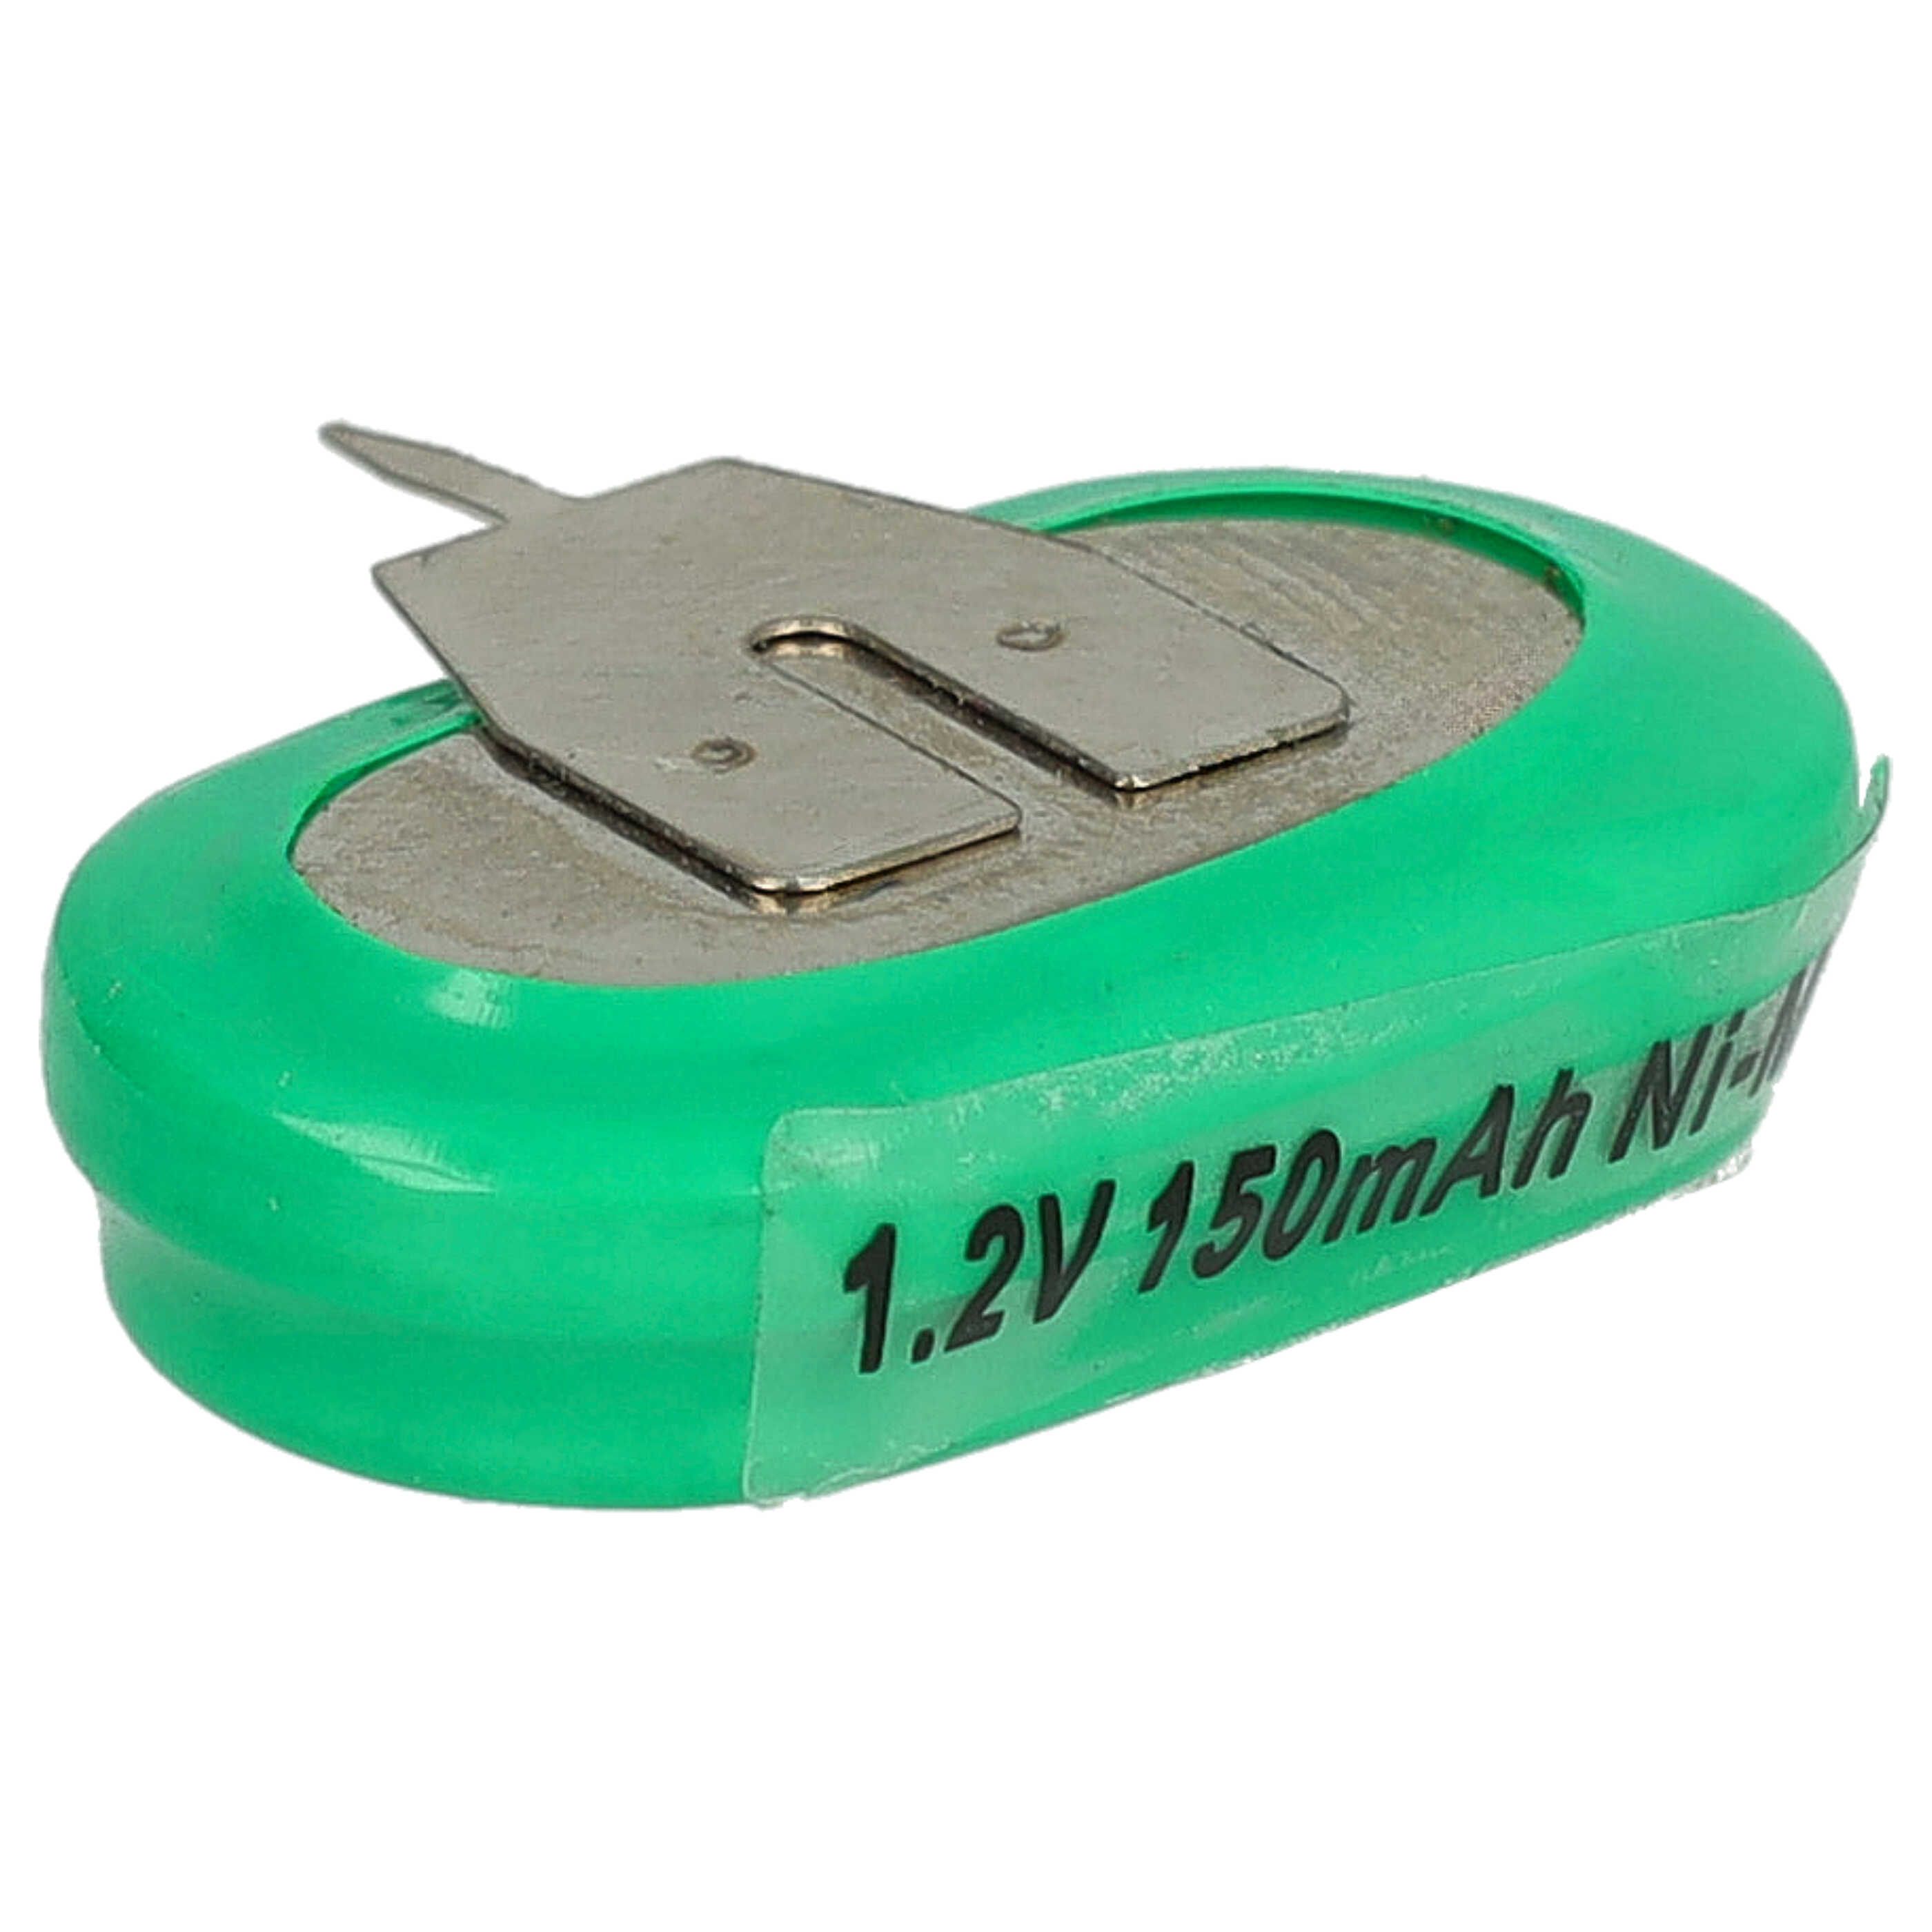 Pile bouton (1x cellule) de type 1/V150H 3 broches pour le modélisme et autres - 150mAh 1,2V NiMH